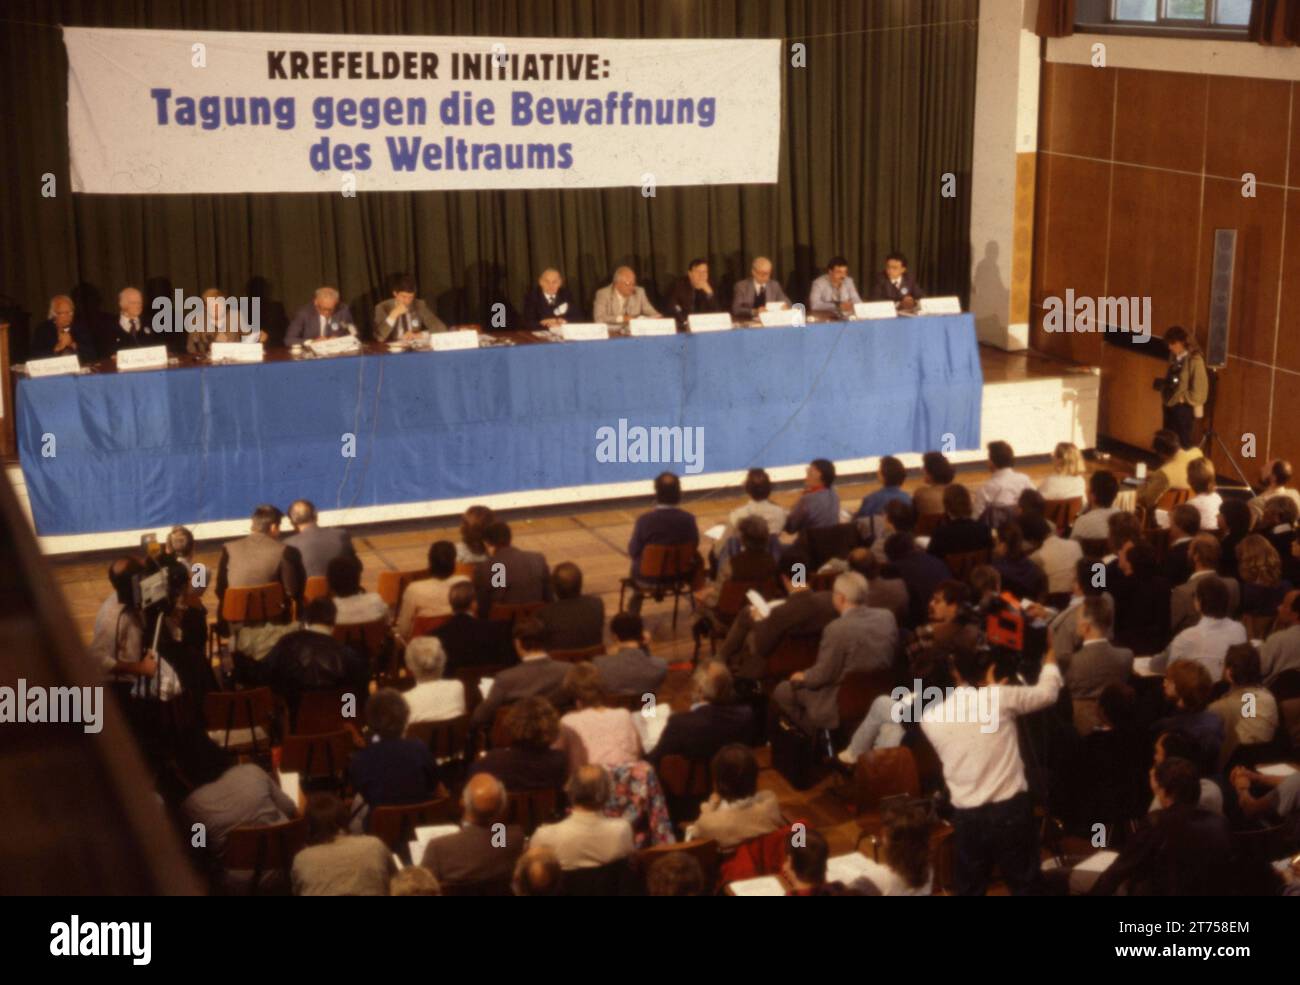 DEU, Deutschland: Historische Rutschen aus den 84-85 r Jahren Ruhrgebiet. Friedensbewegung. Demonstrationsraum ca. 1984 Stockfoto